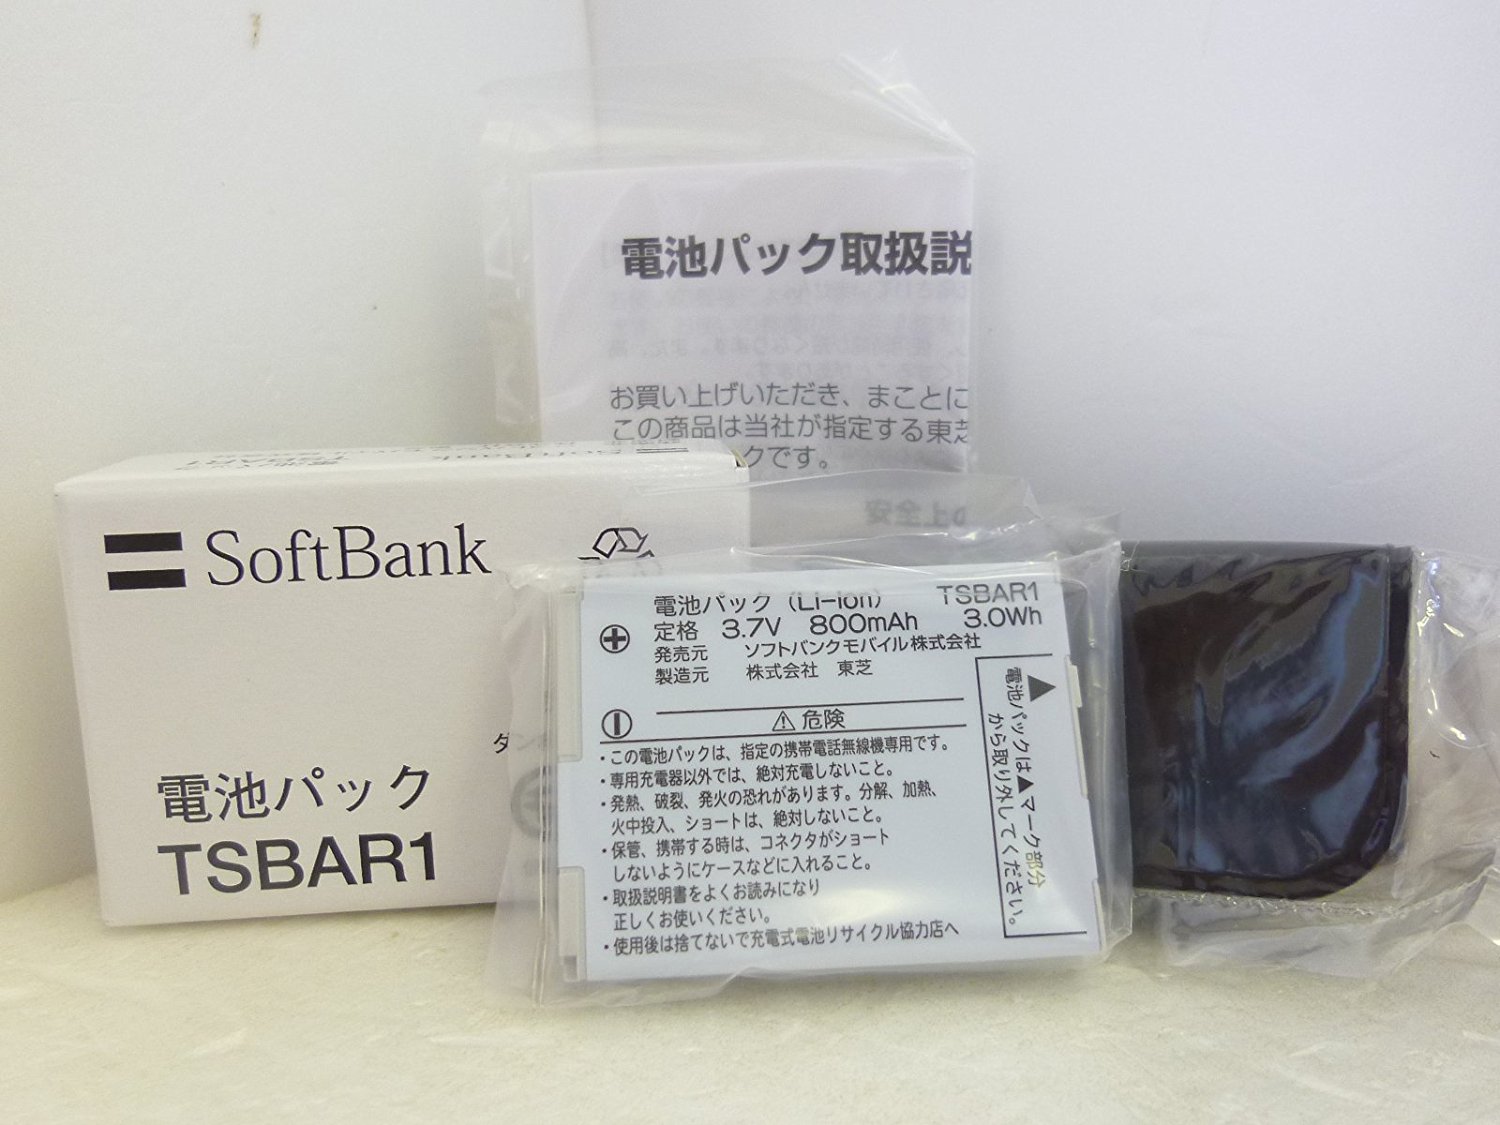 ポイン最大43.5倍 【中古】SoftBank 純正電池パック TSBAR1 911T用 ソフトバンク